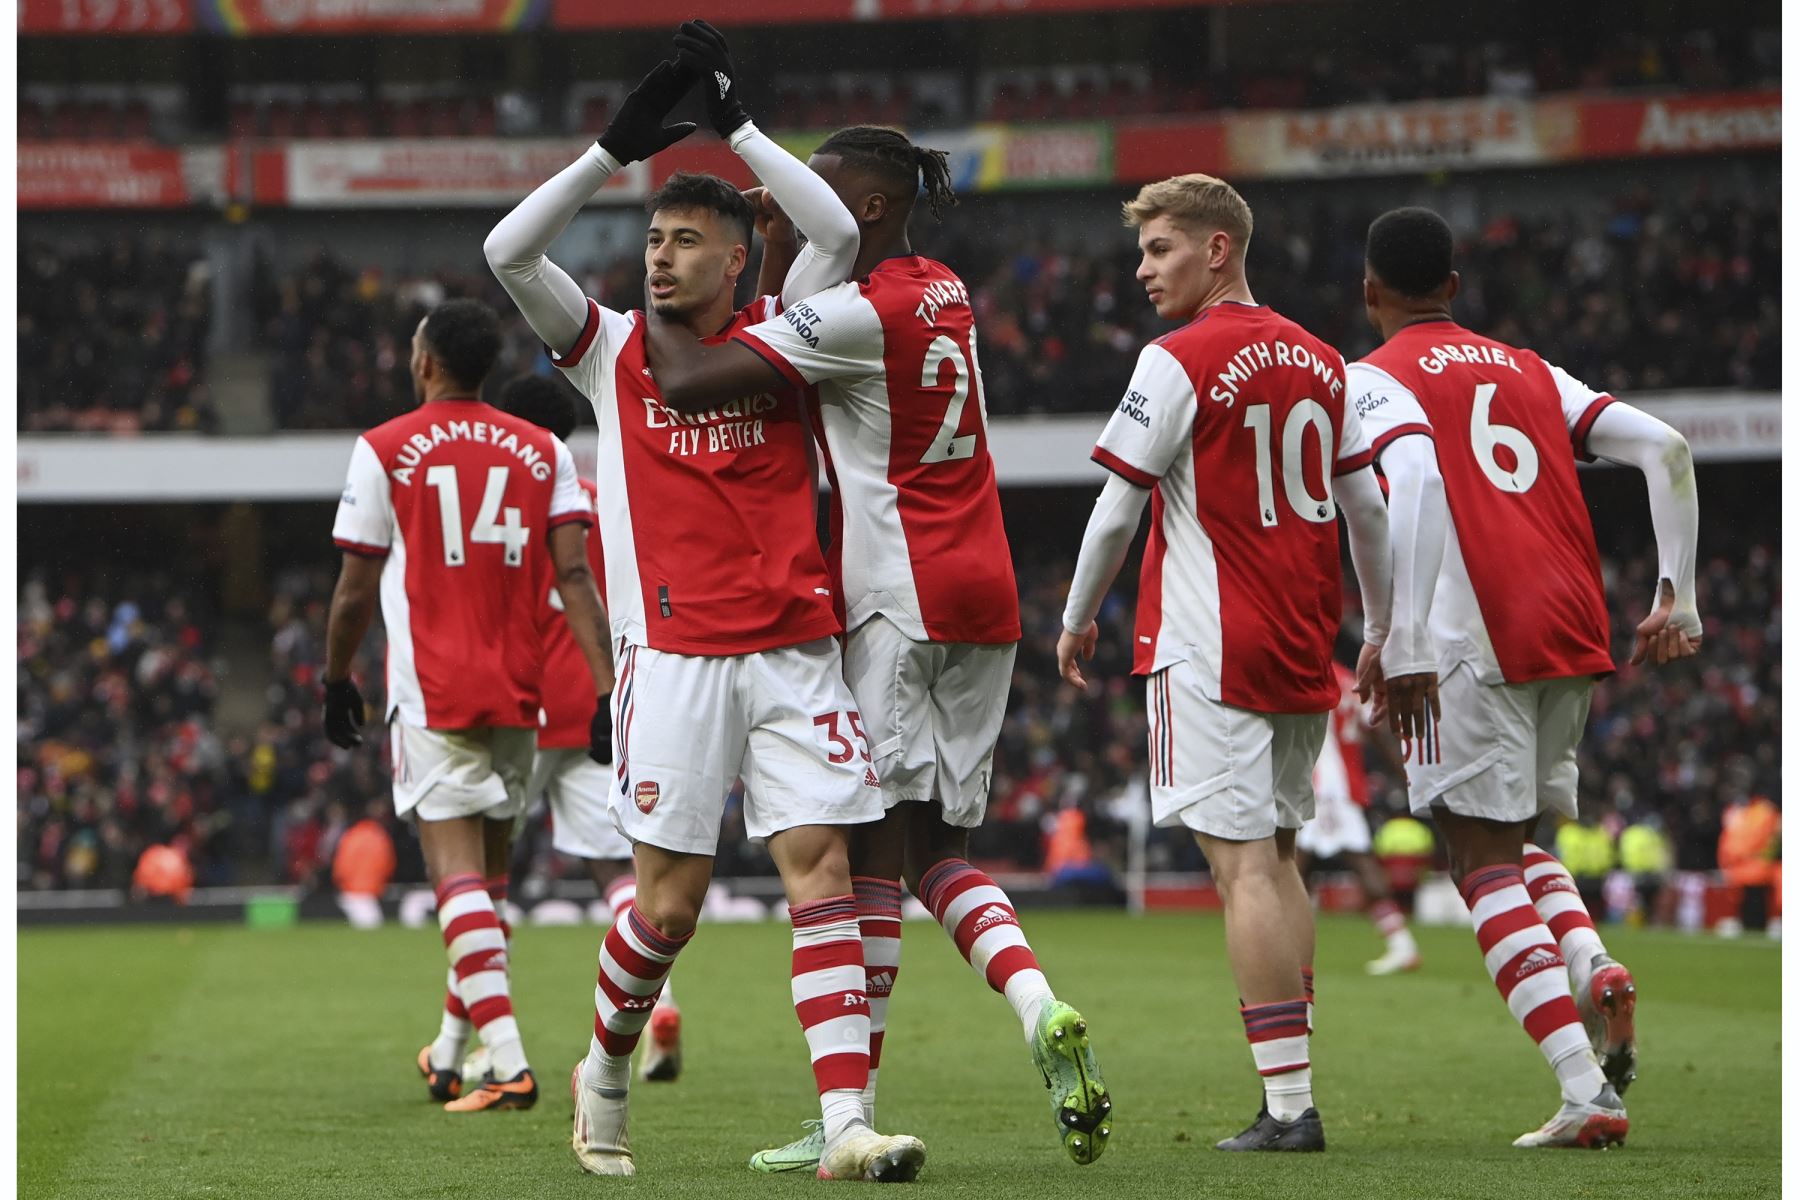 Gabriel Martinelli del Arsenal celebra con sus compañeros de equipo tras anotar la ventaja de 2-0 durante el partido de la Premier League. Foto: EFE